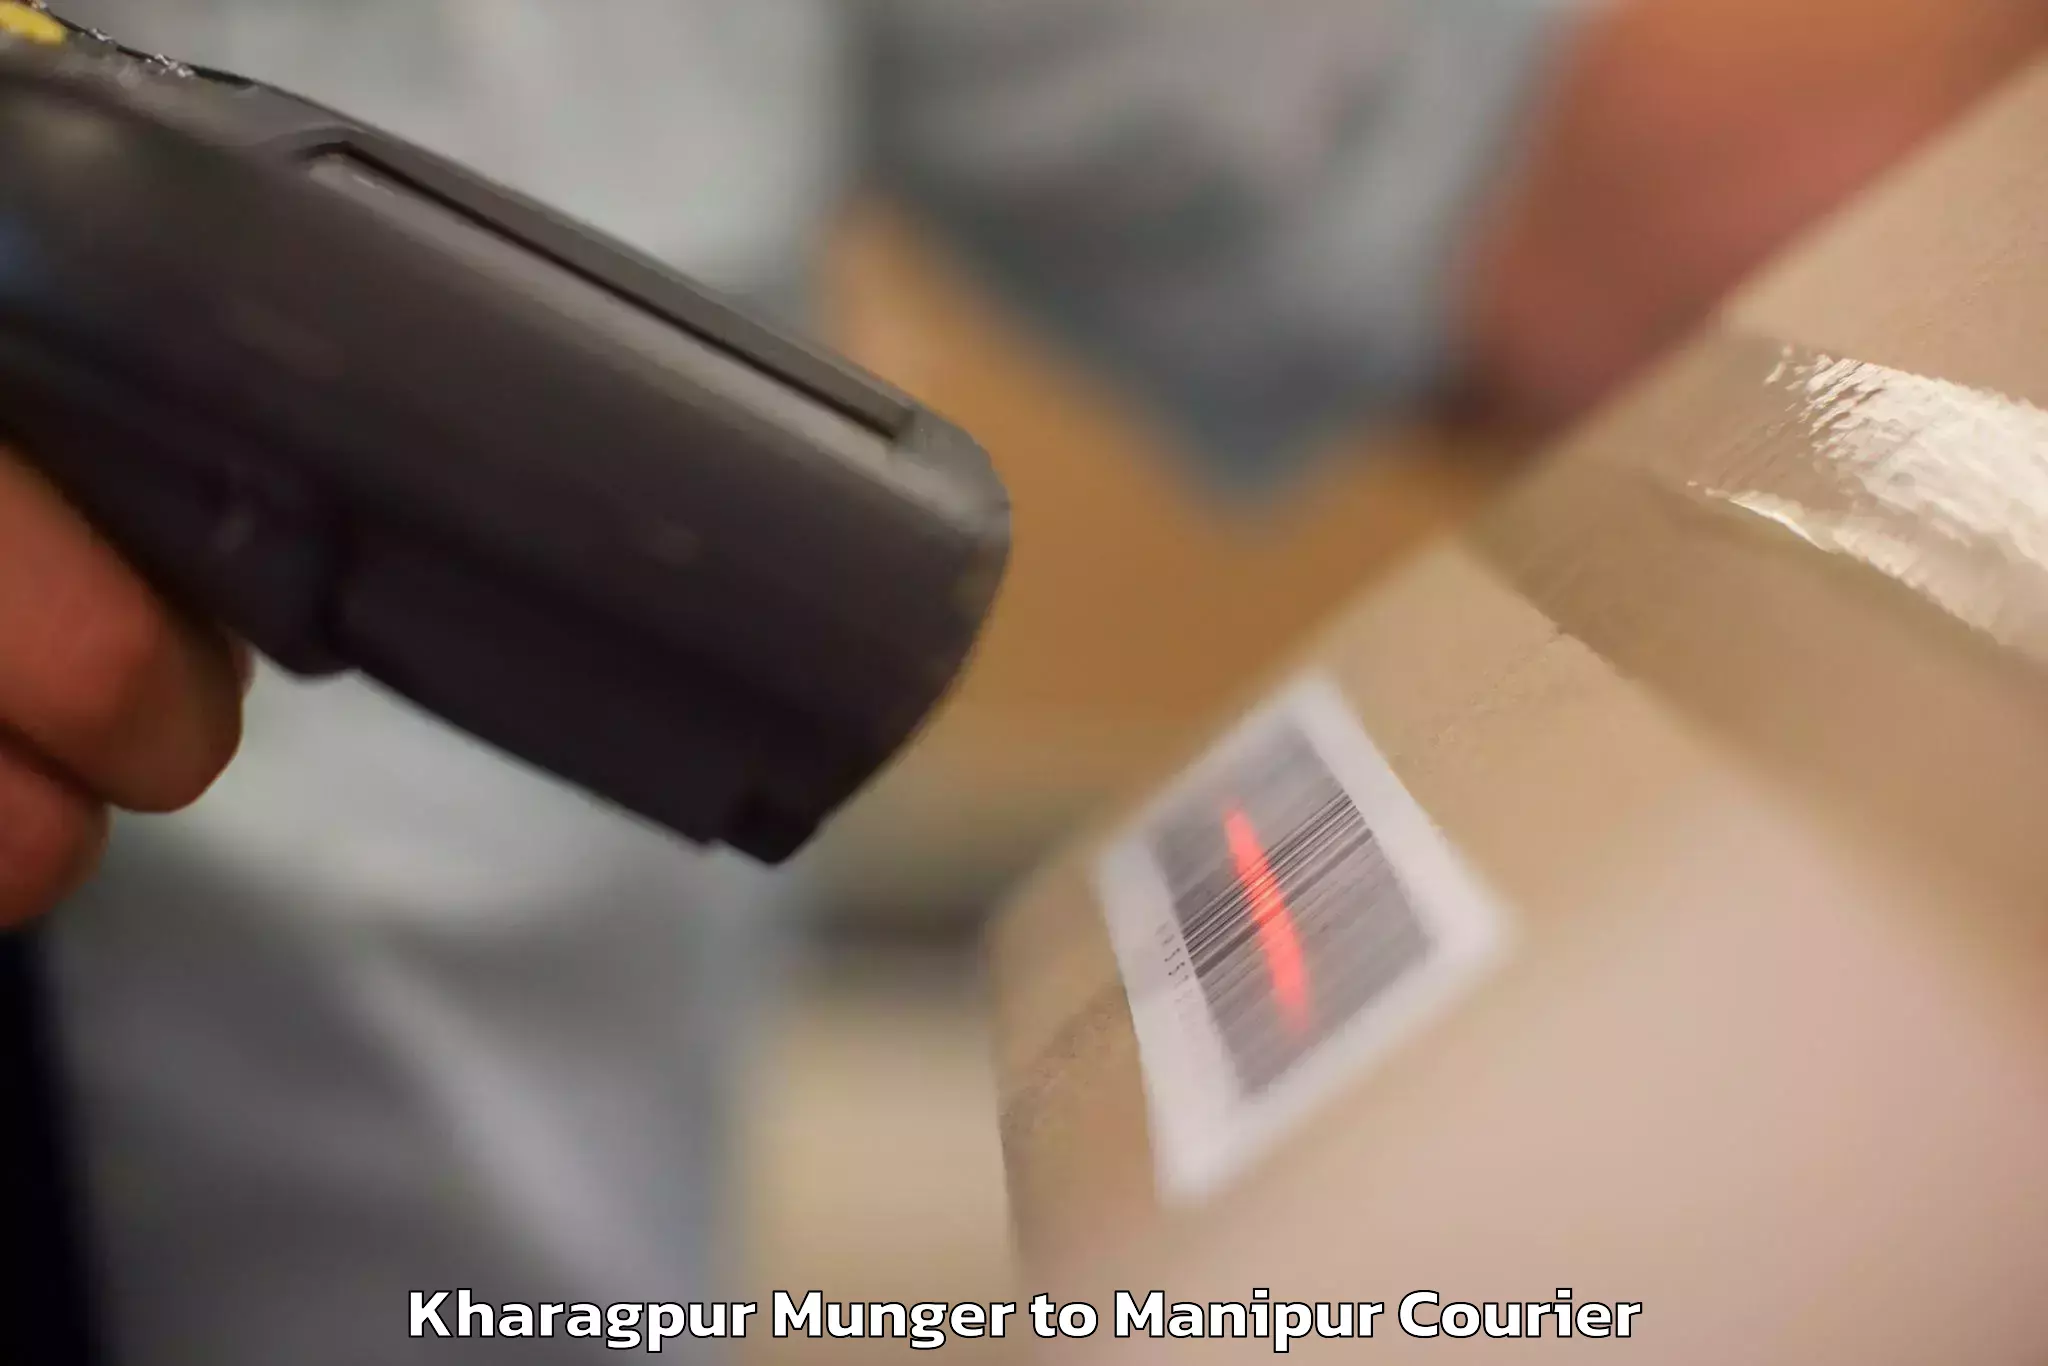 Luggage dispatch service Kharagpur Munger to Imphal